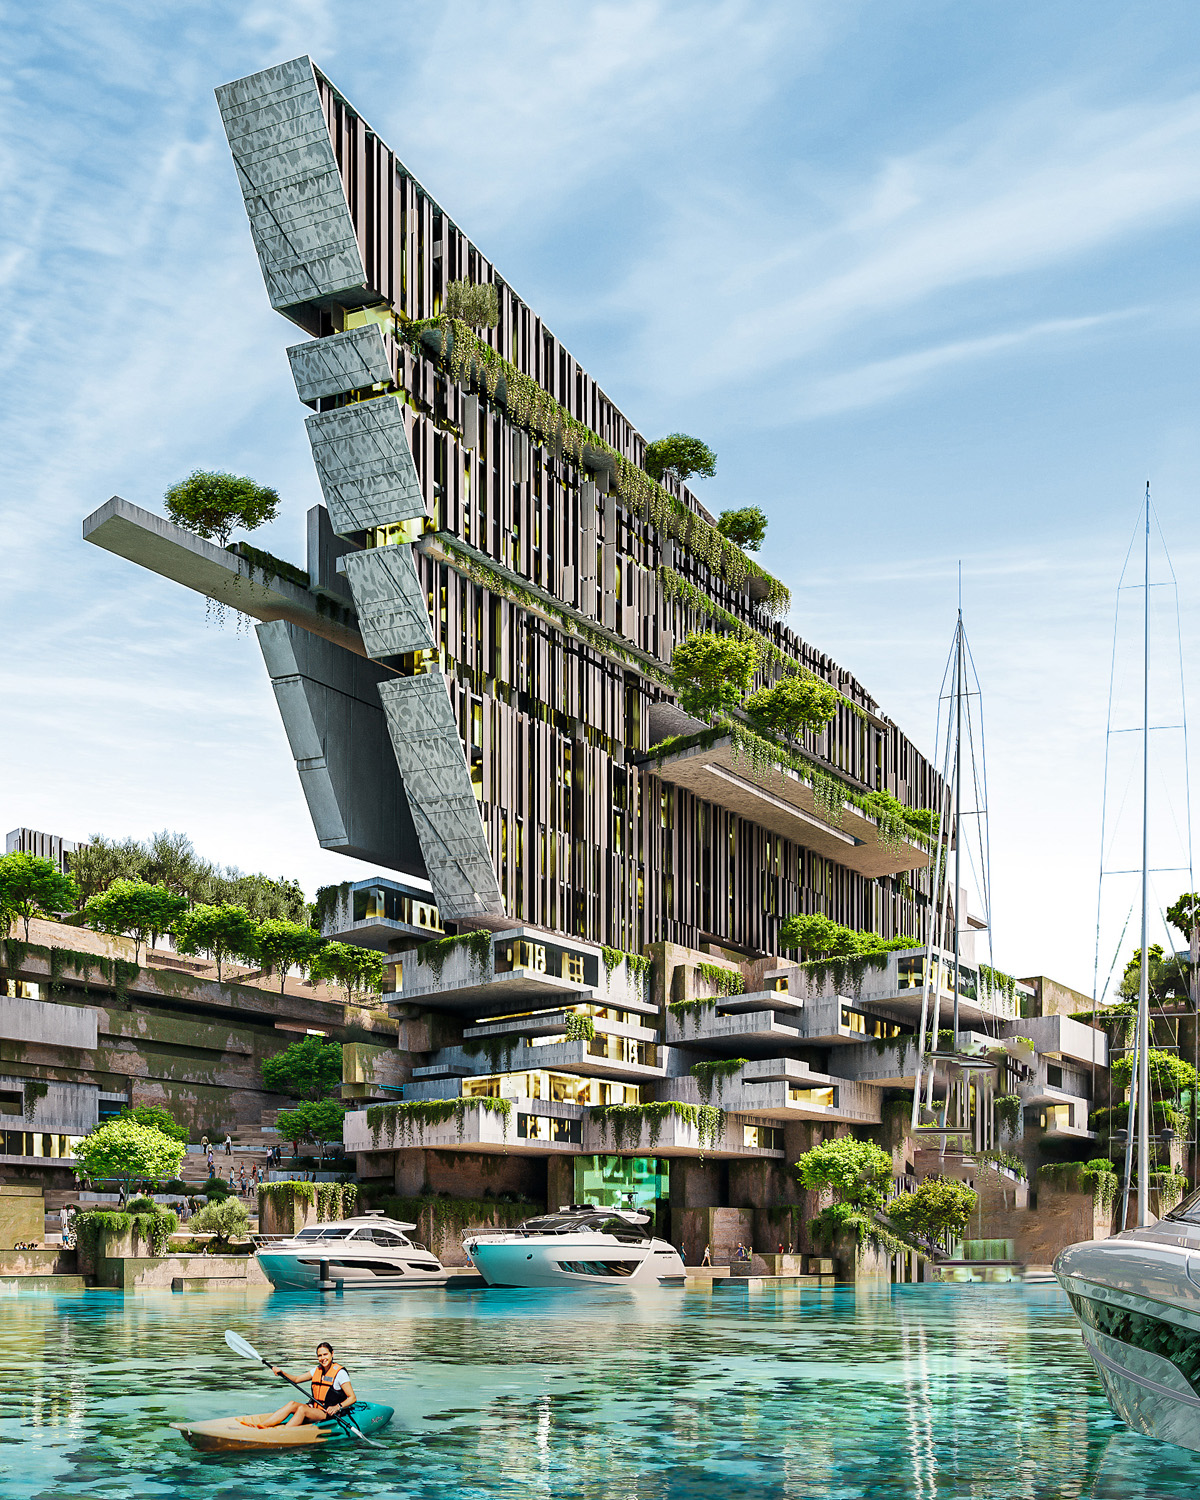 Kajakfahren auf einem ruhigen See bei Jaumur, mit futuristischen Villen und Apartments im Hintergrund